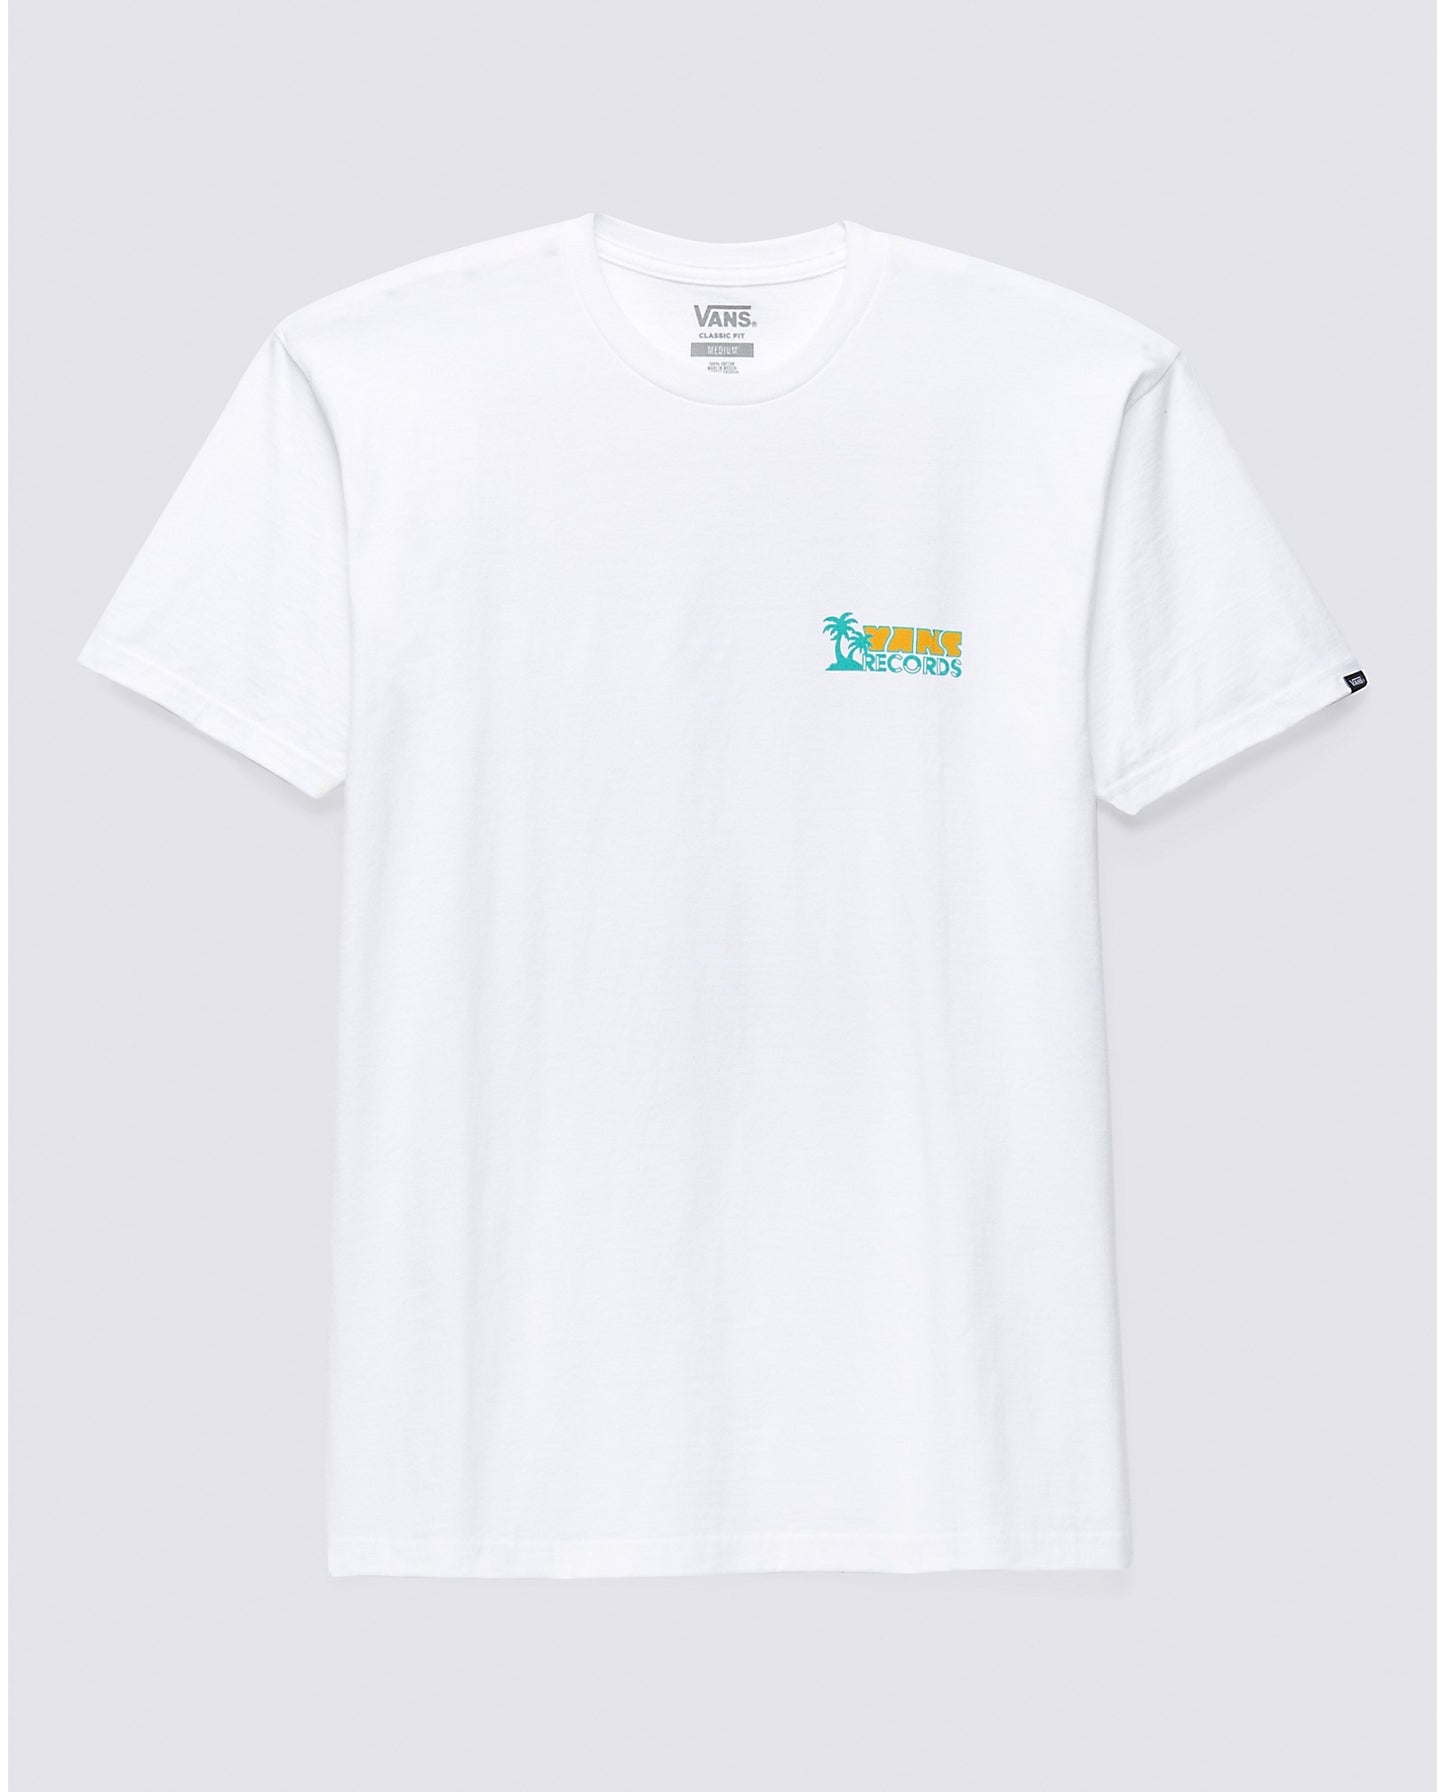 VANS Records T-Shirt